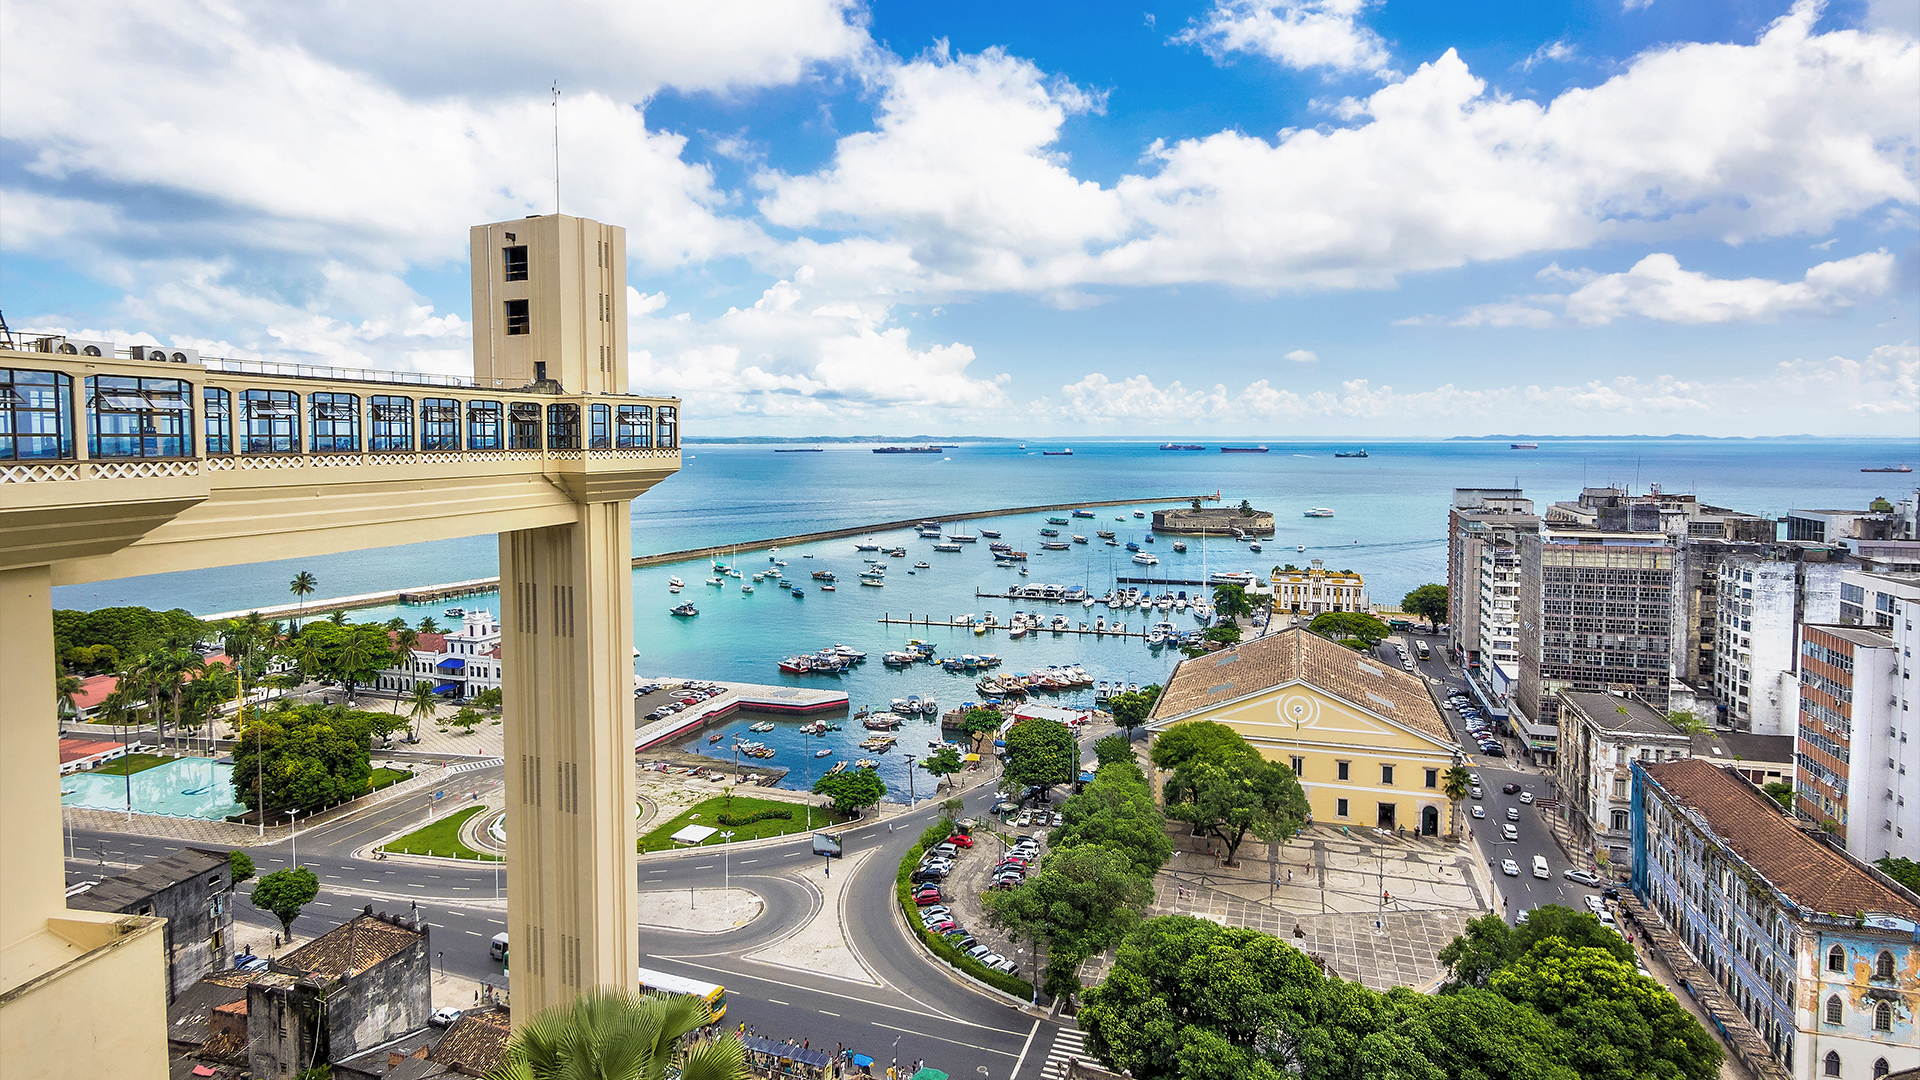 Waterfront Cities of the World - S2E11 - Salvador de Bahia